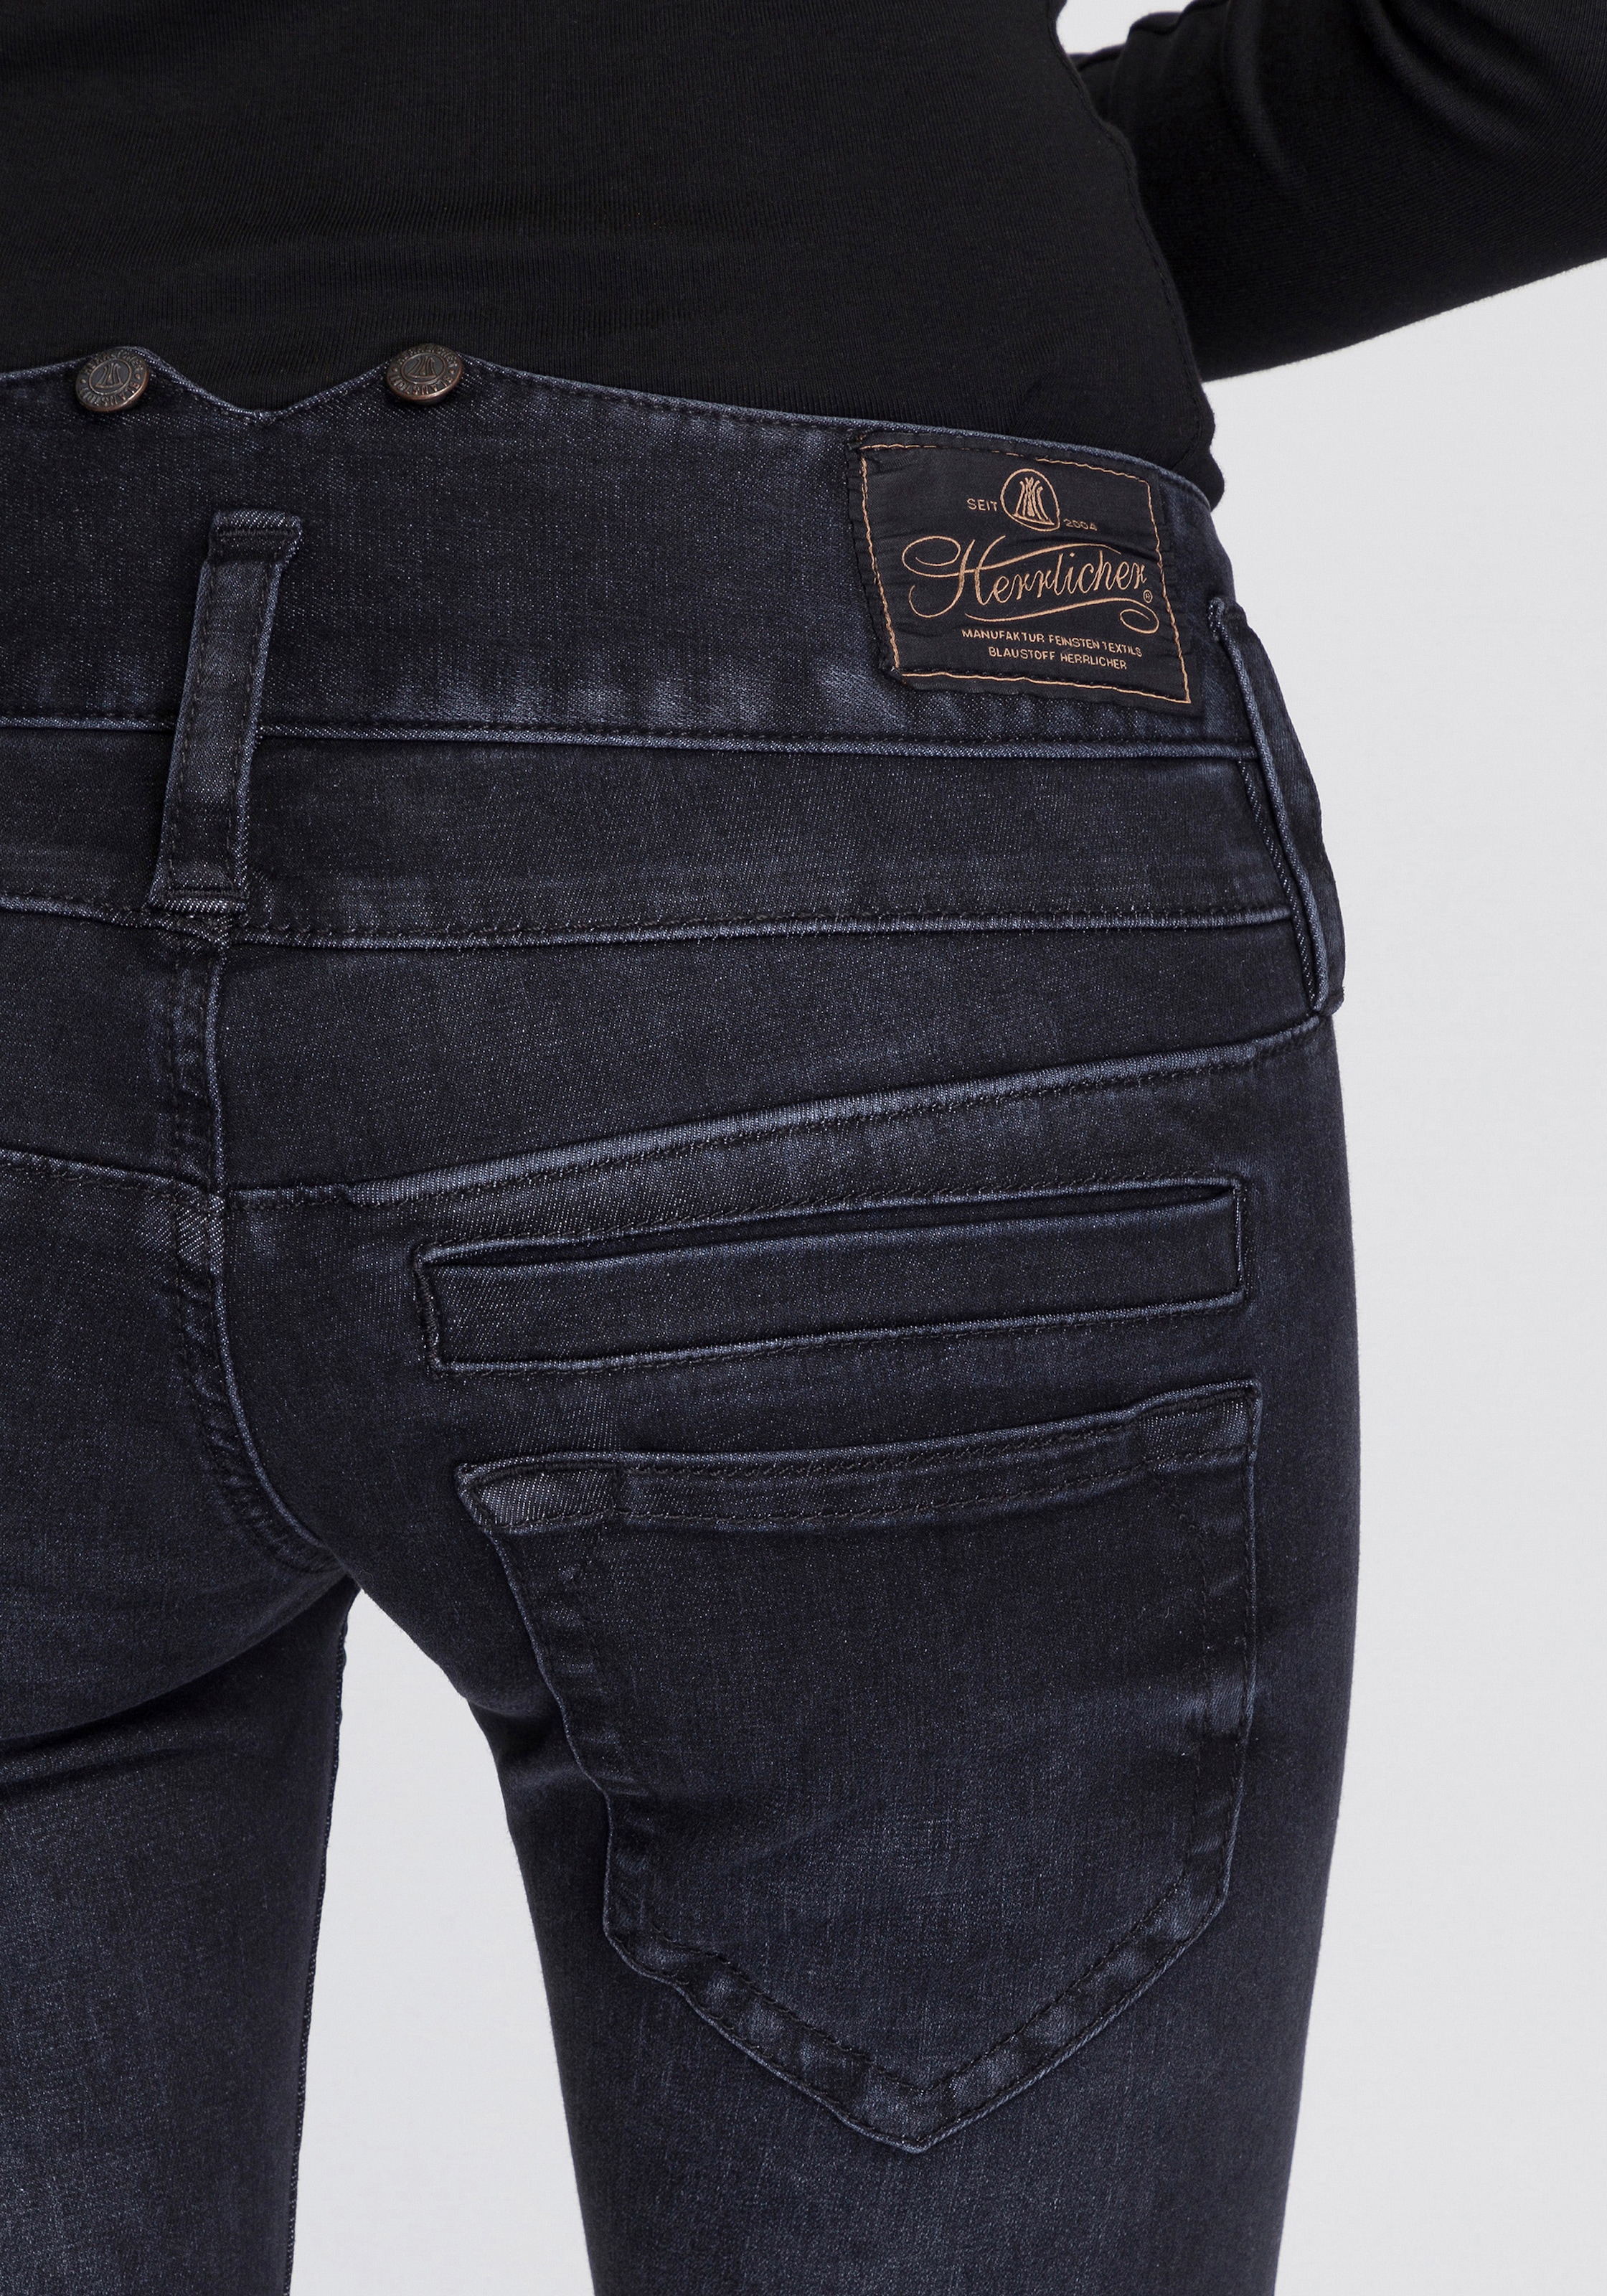 Herrlicher ISKO versandkostenfrei Technology REUSED«, SLIM »PITCH Slim-fit-Jeans dank auf umweltfreundlich der New